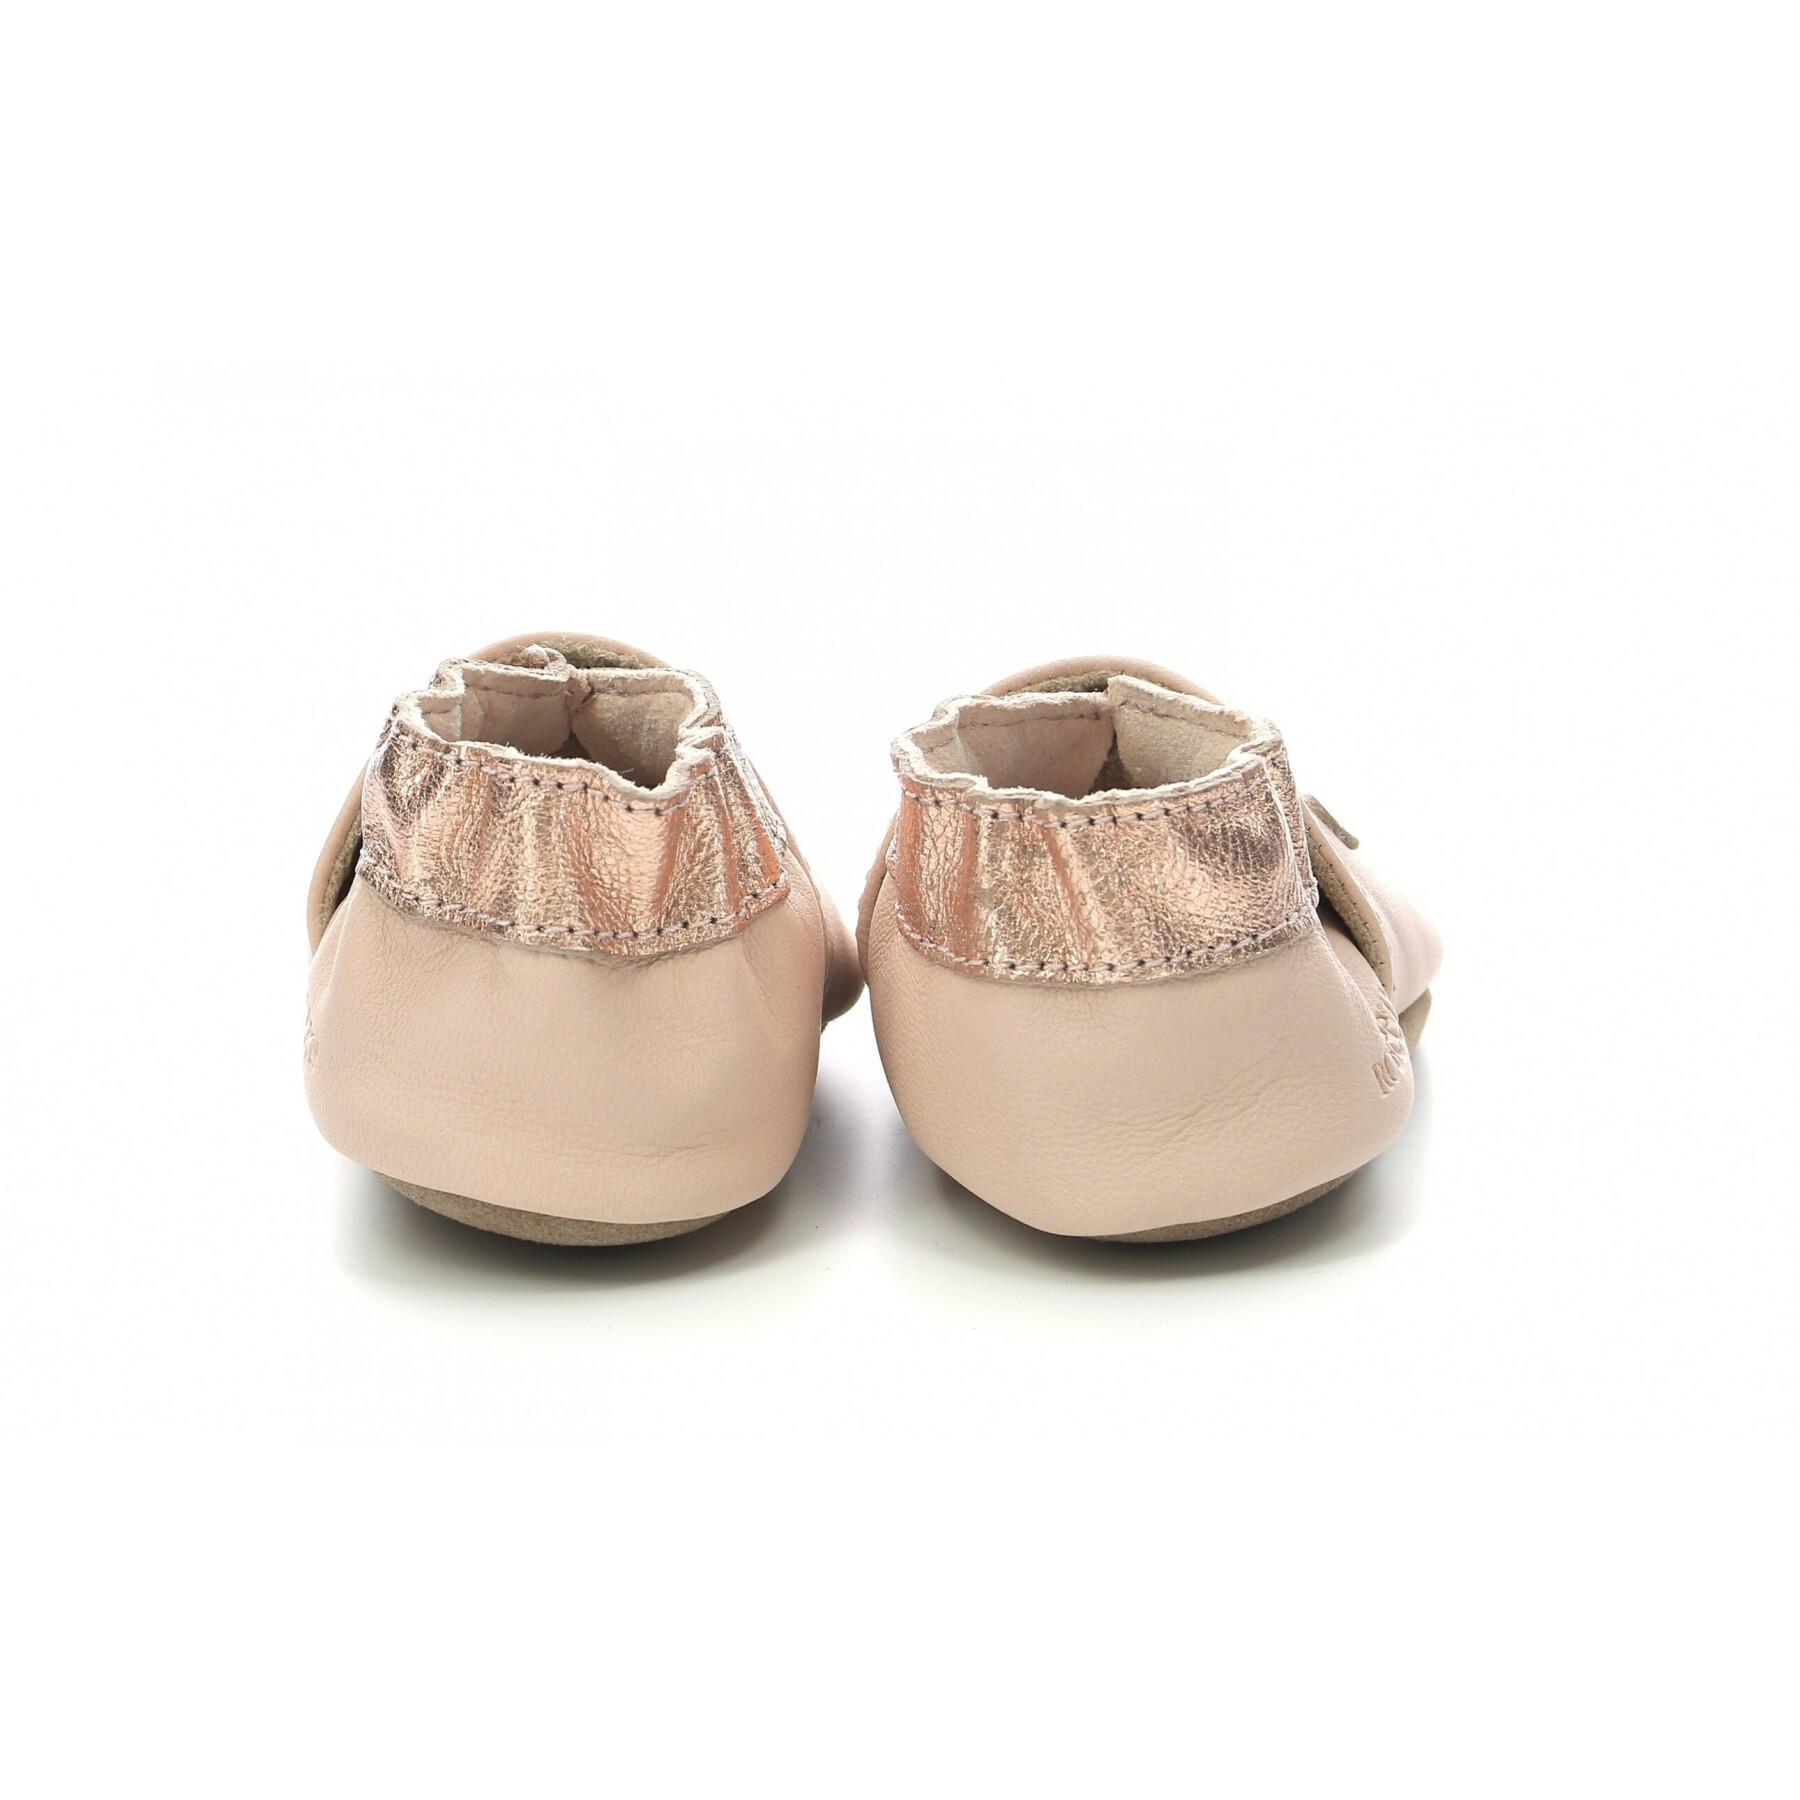 Sapatos para bebés Robeez Vegetal